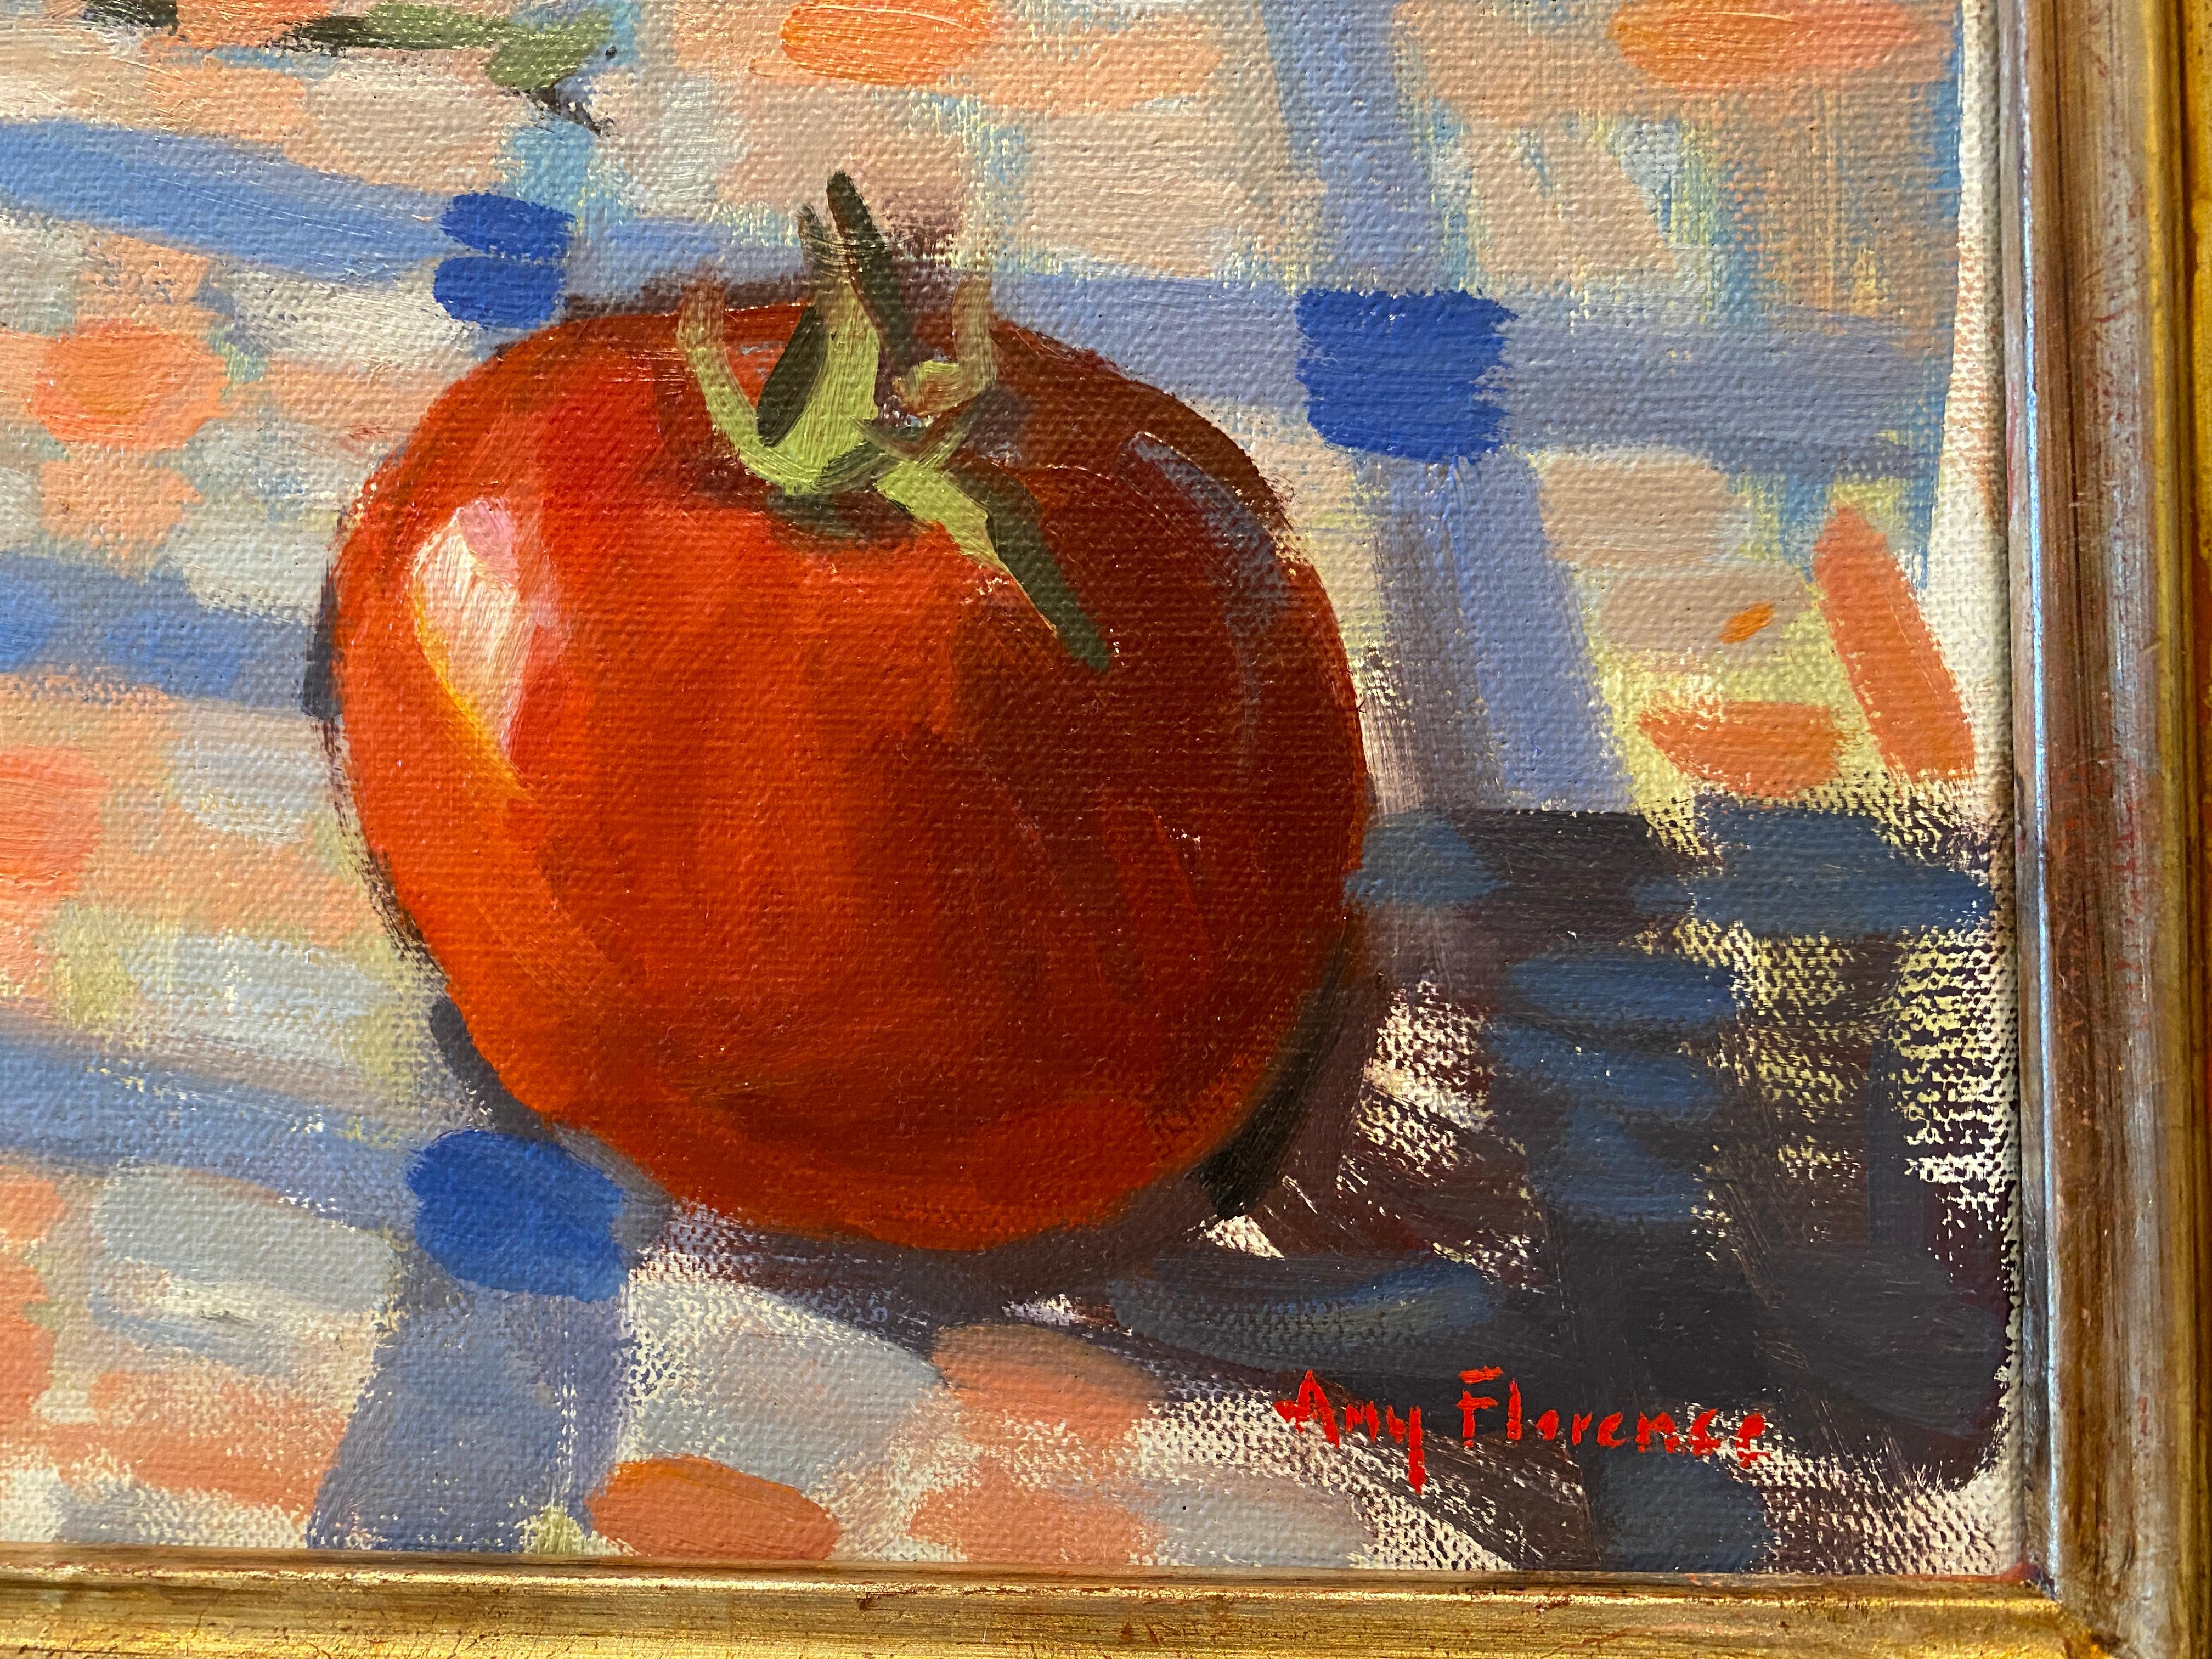 Une peinture à l'huile de tomates rouges brillantes sur une nappe à carreaux. Cette œuvre reflète la conviction de l'artiste que les choses ordinaires possèdent une grande beauté.  Après une matinée passée à cueillir des tomates dans le jardin de